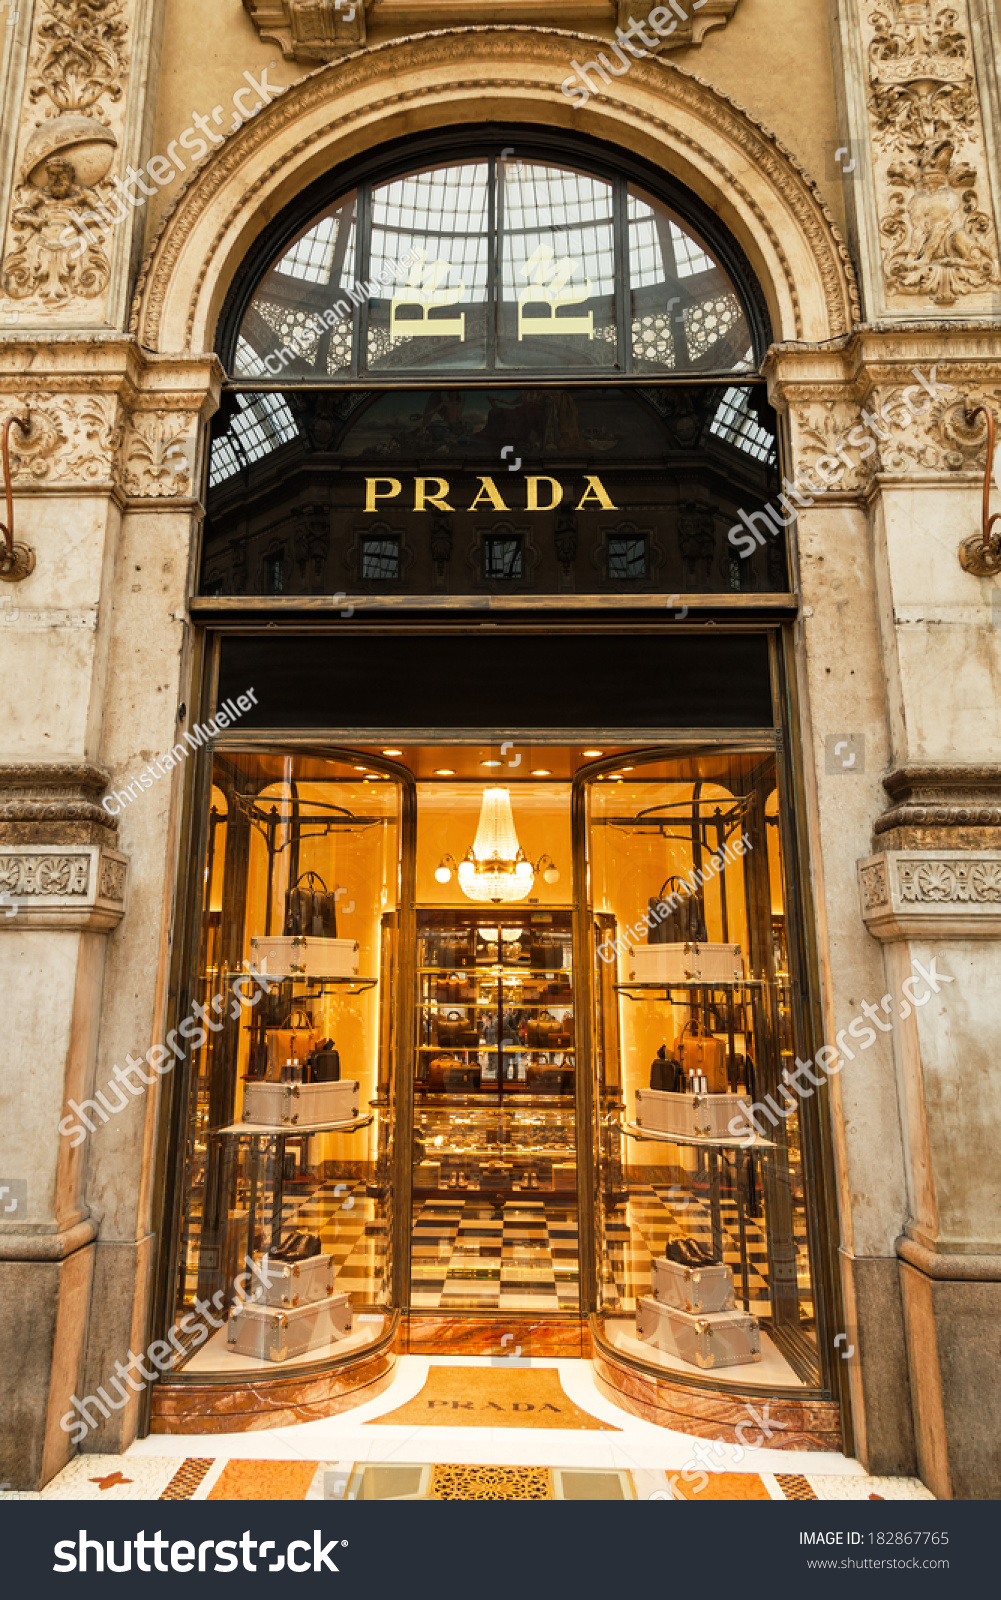 prada italy online store